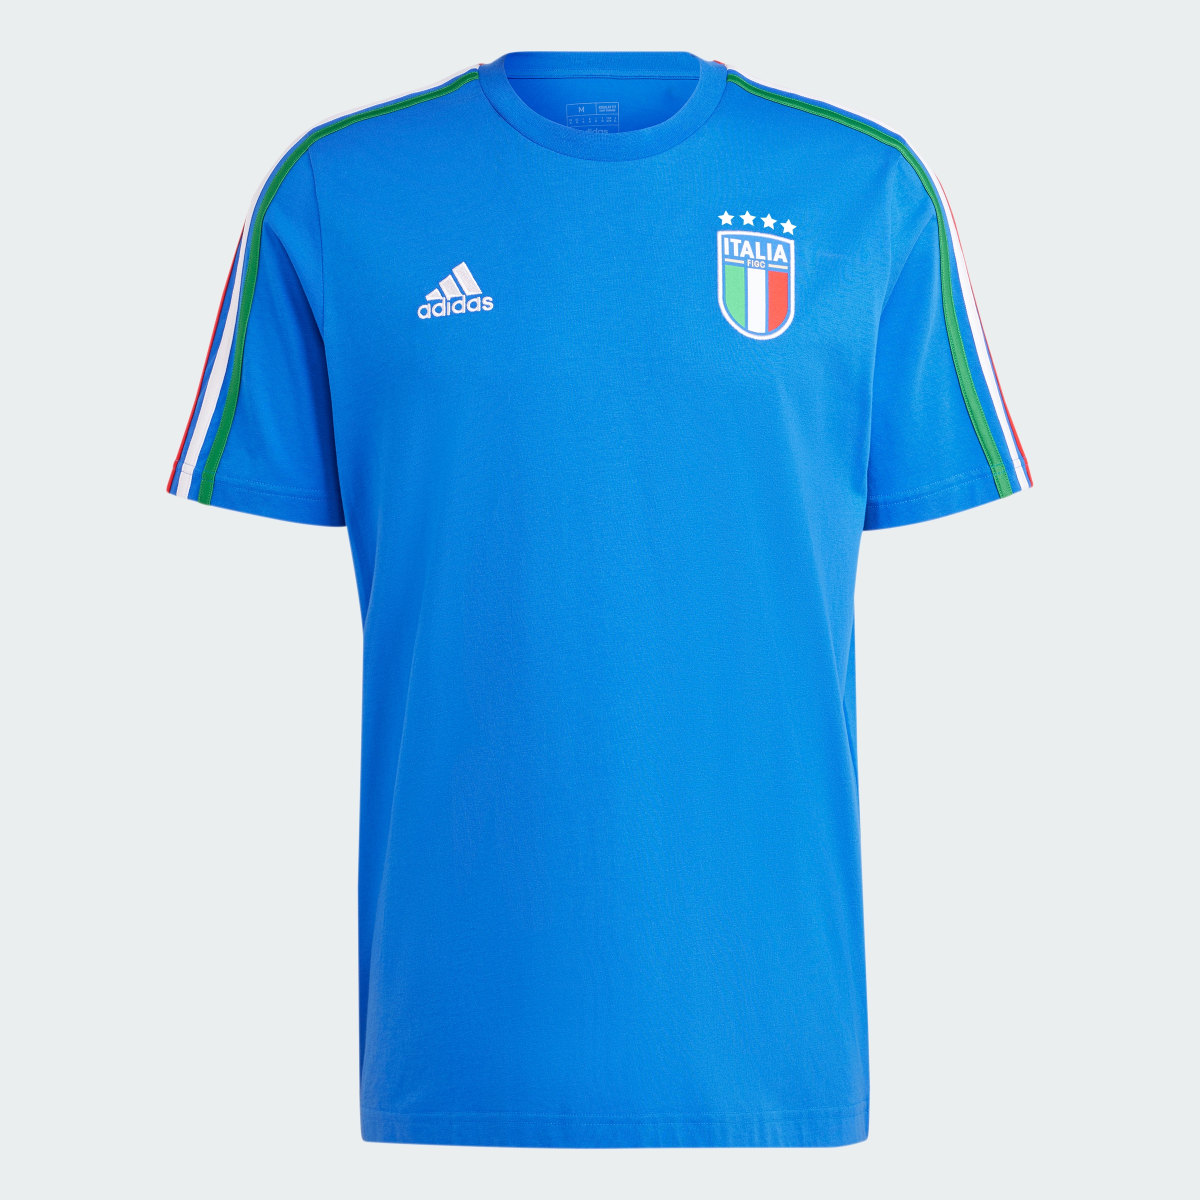 Adidas Camiseta Italia DNA 3 bandas. 5